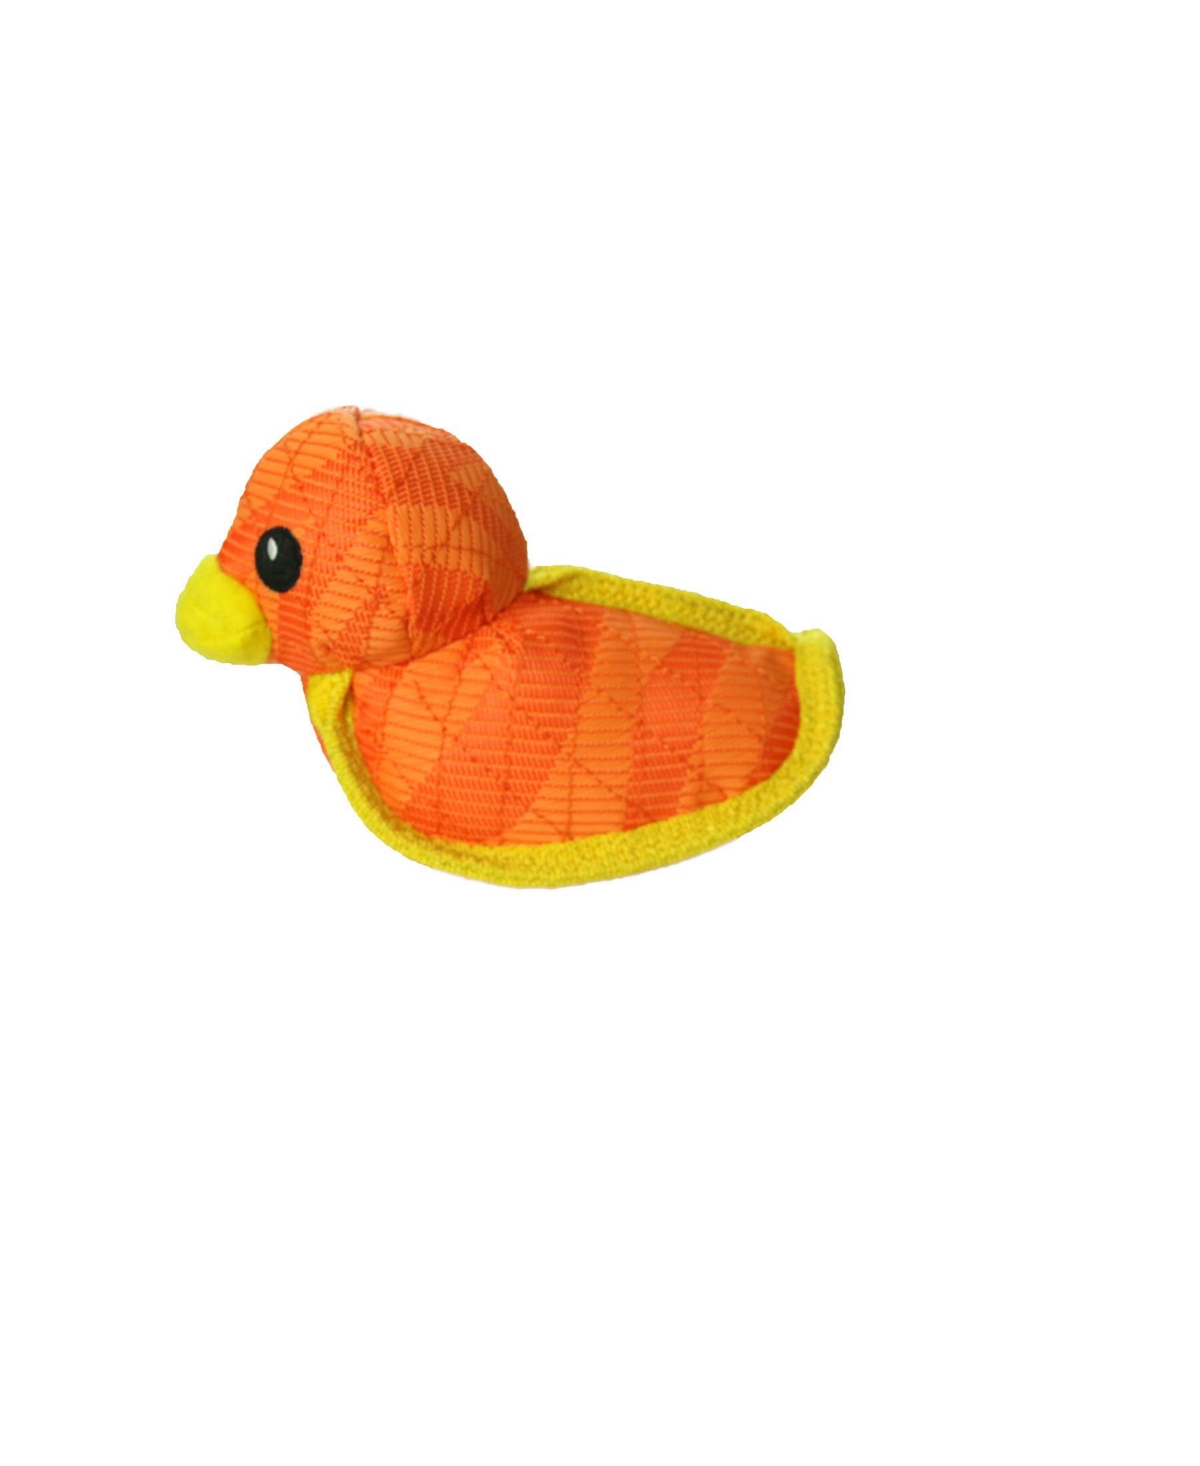 Duck Tiger Orange-Yellow, Dog Toy - Bright Orange